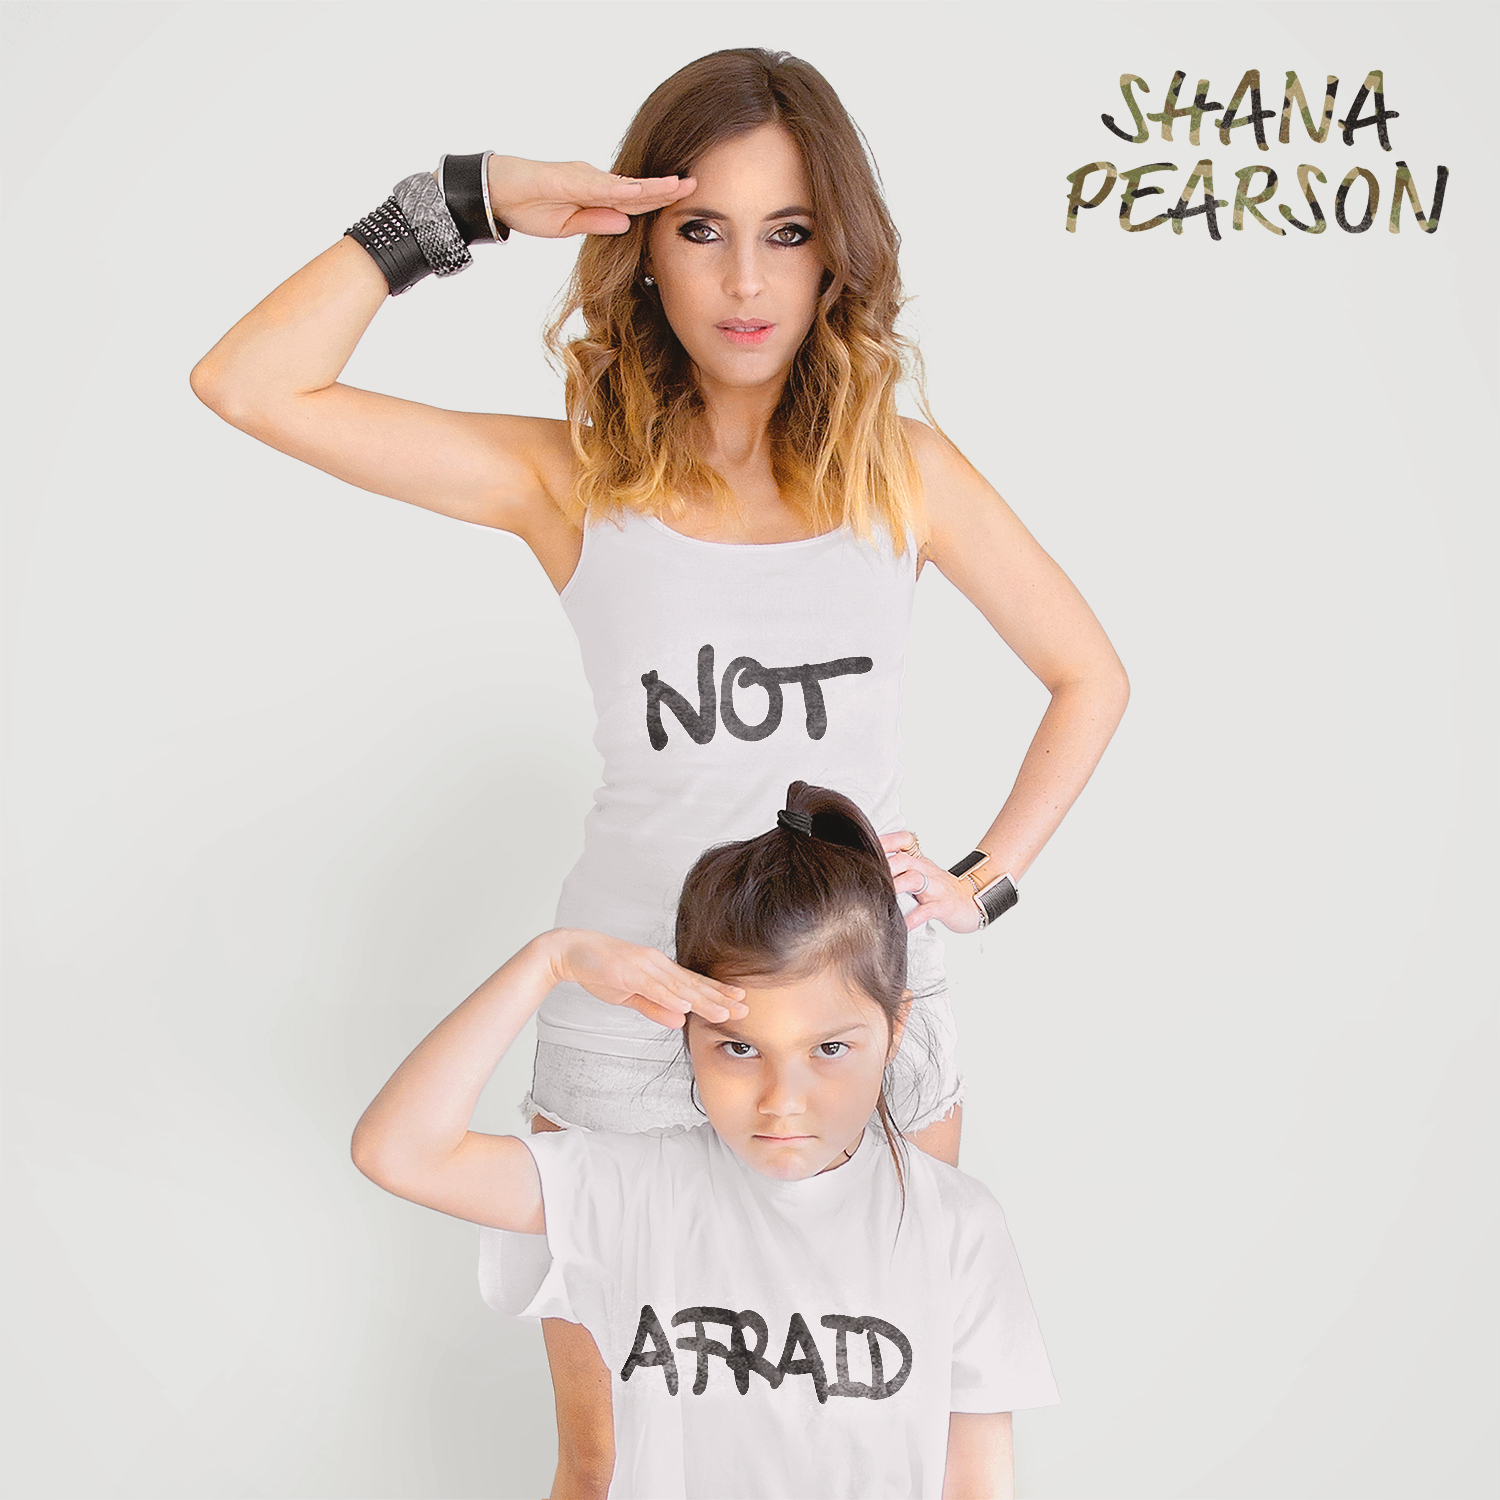 Shana Pearson - Not Afraid - Single.jpg